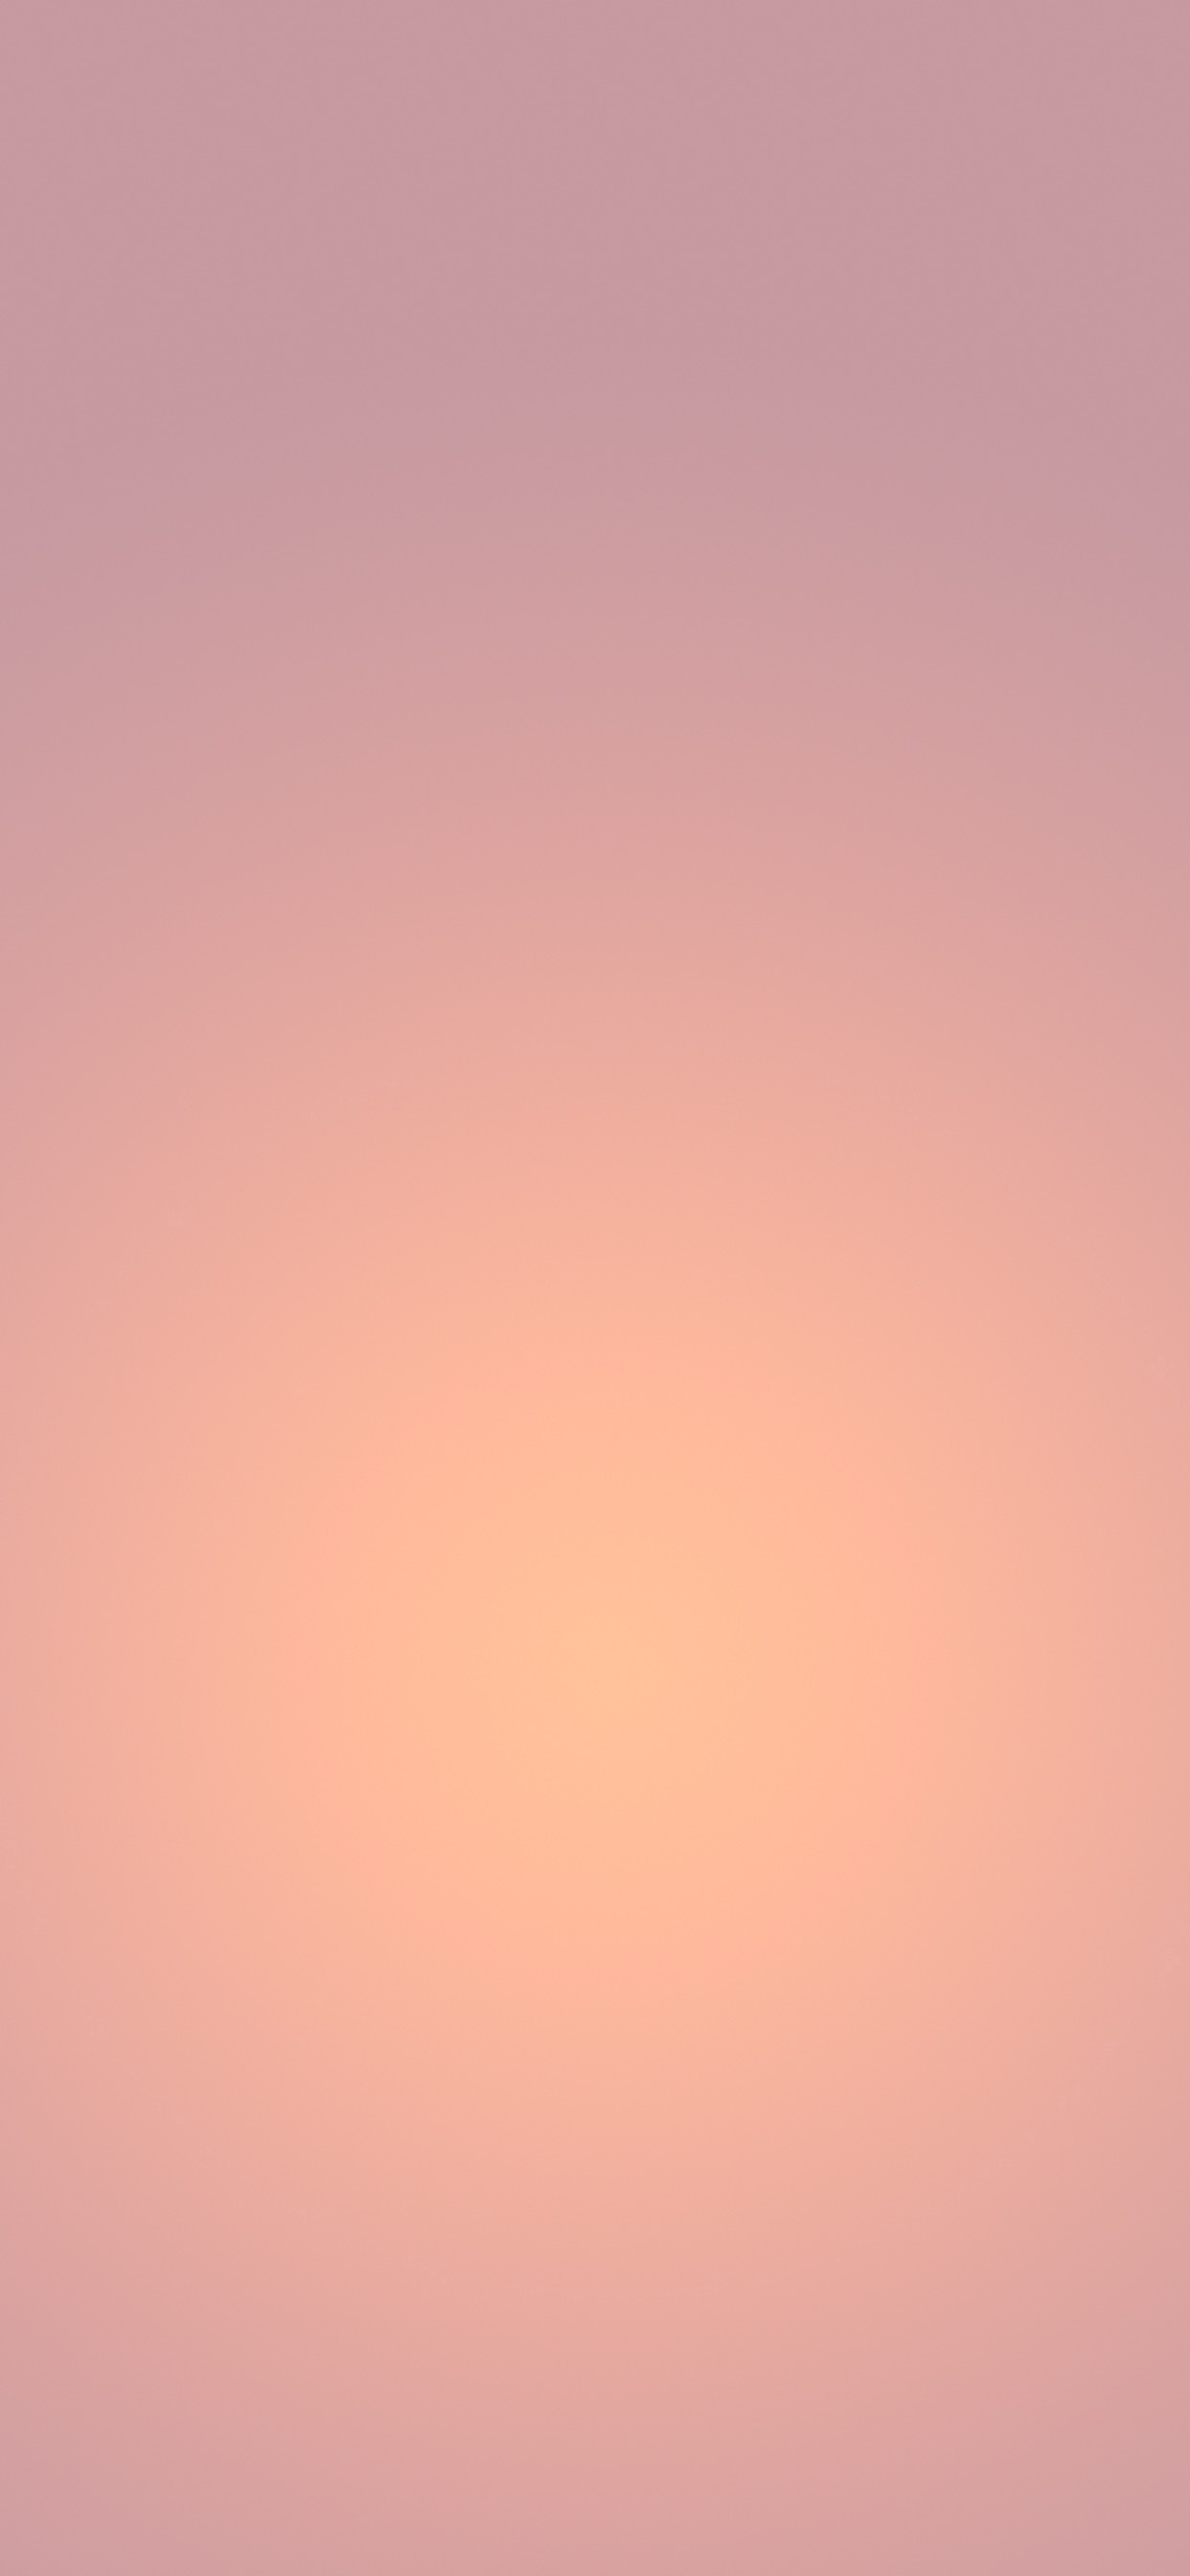 Pink Gradient Iphone Wallpapers